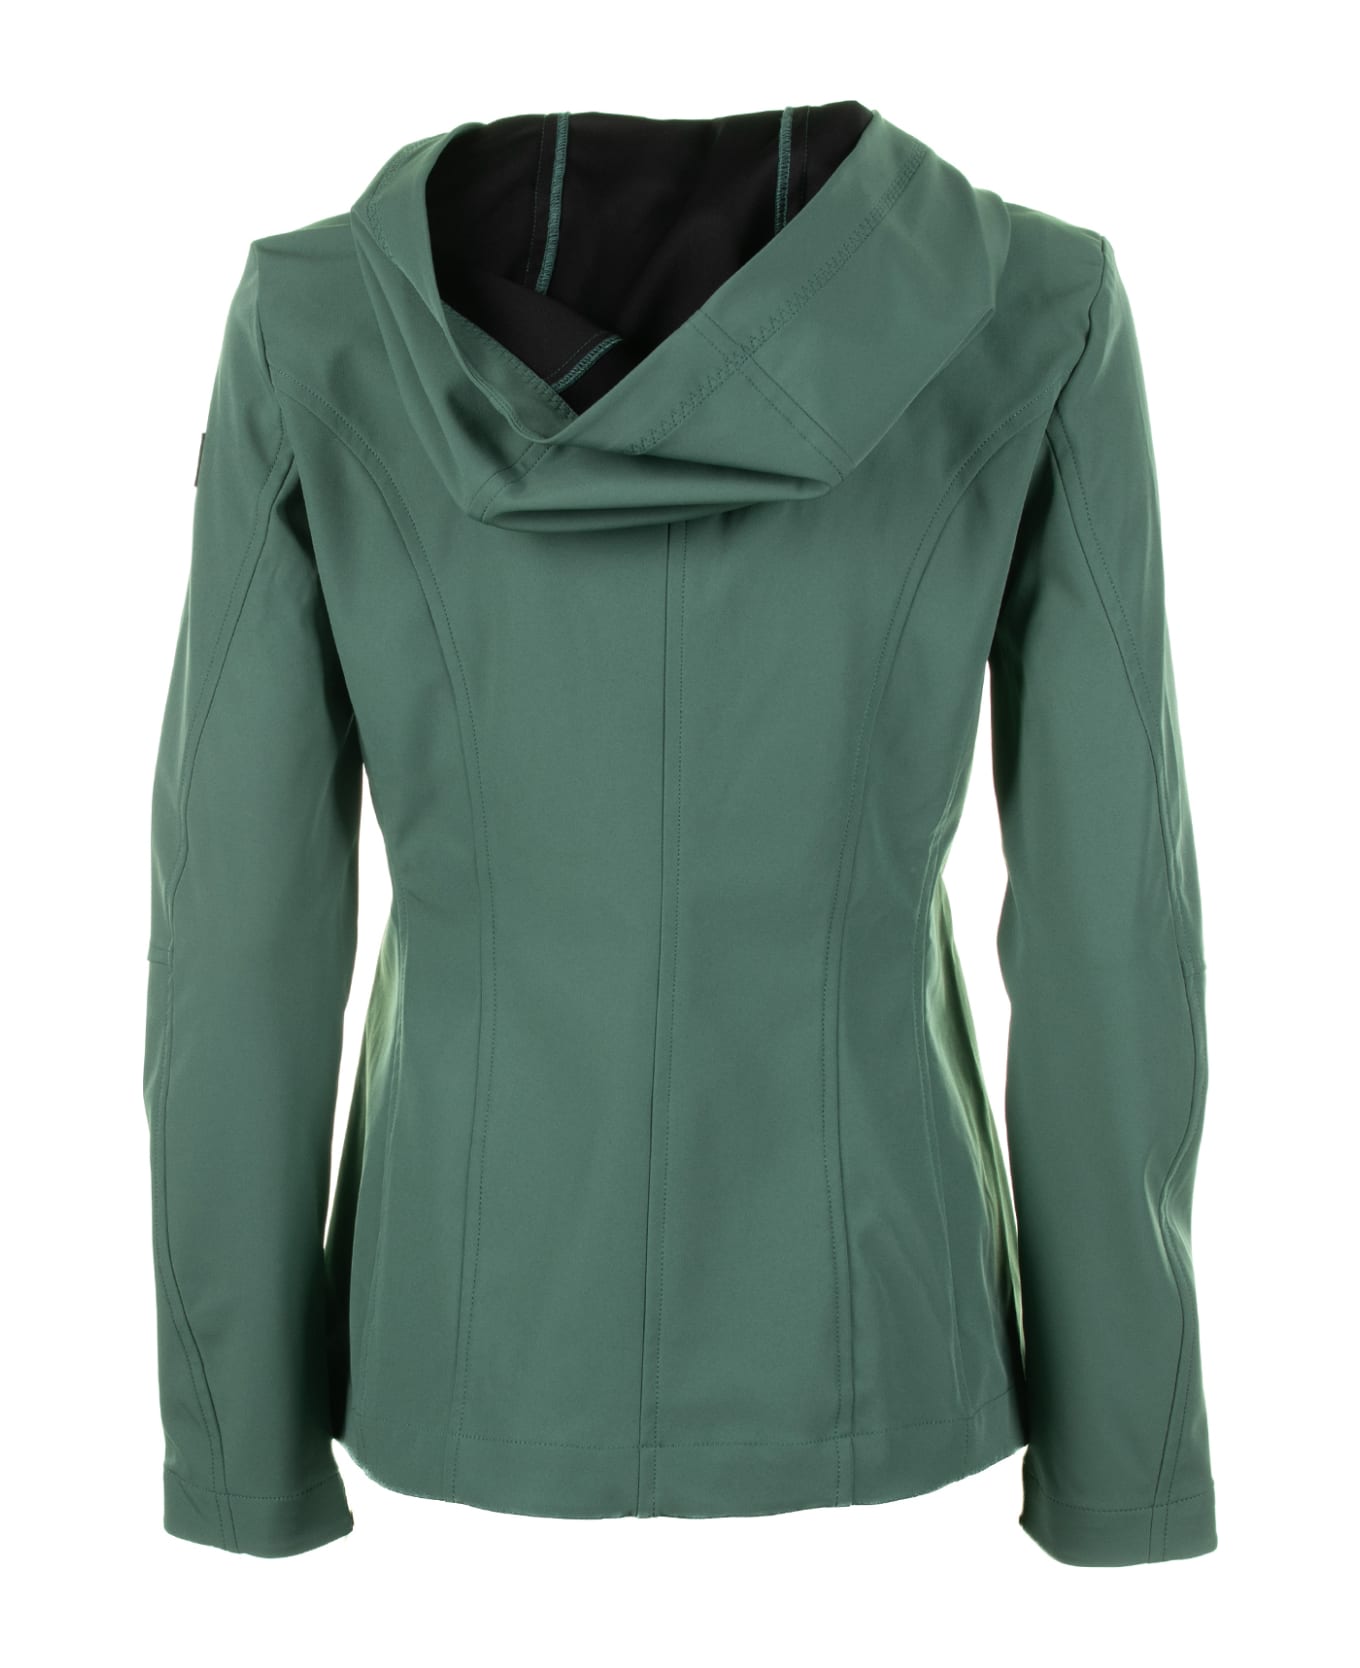 Peuterey Green Jacket With Zip And Hood - VERDE ジャケット